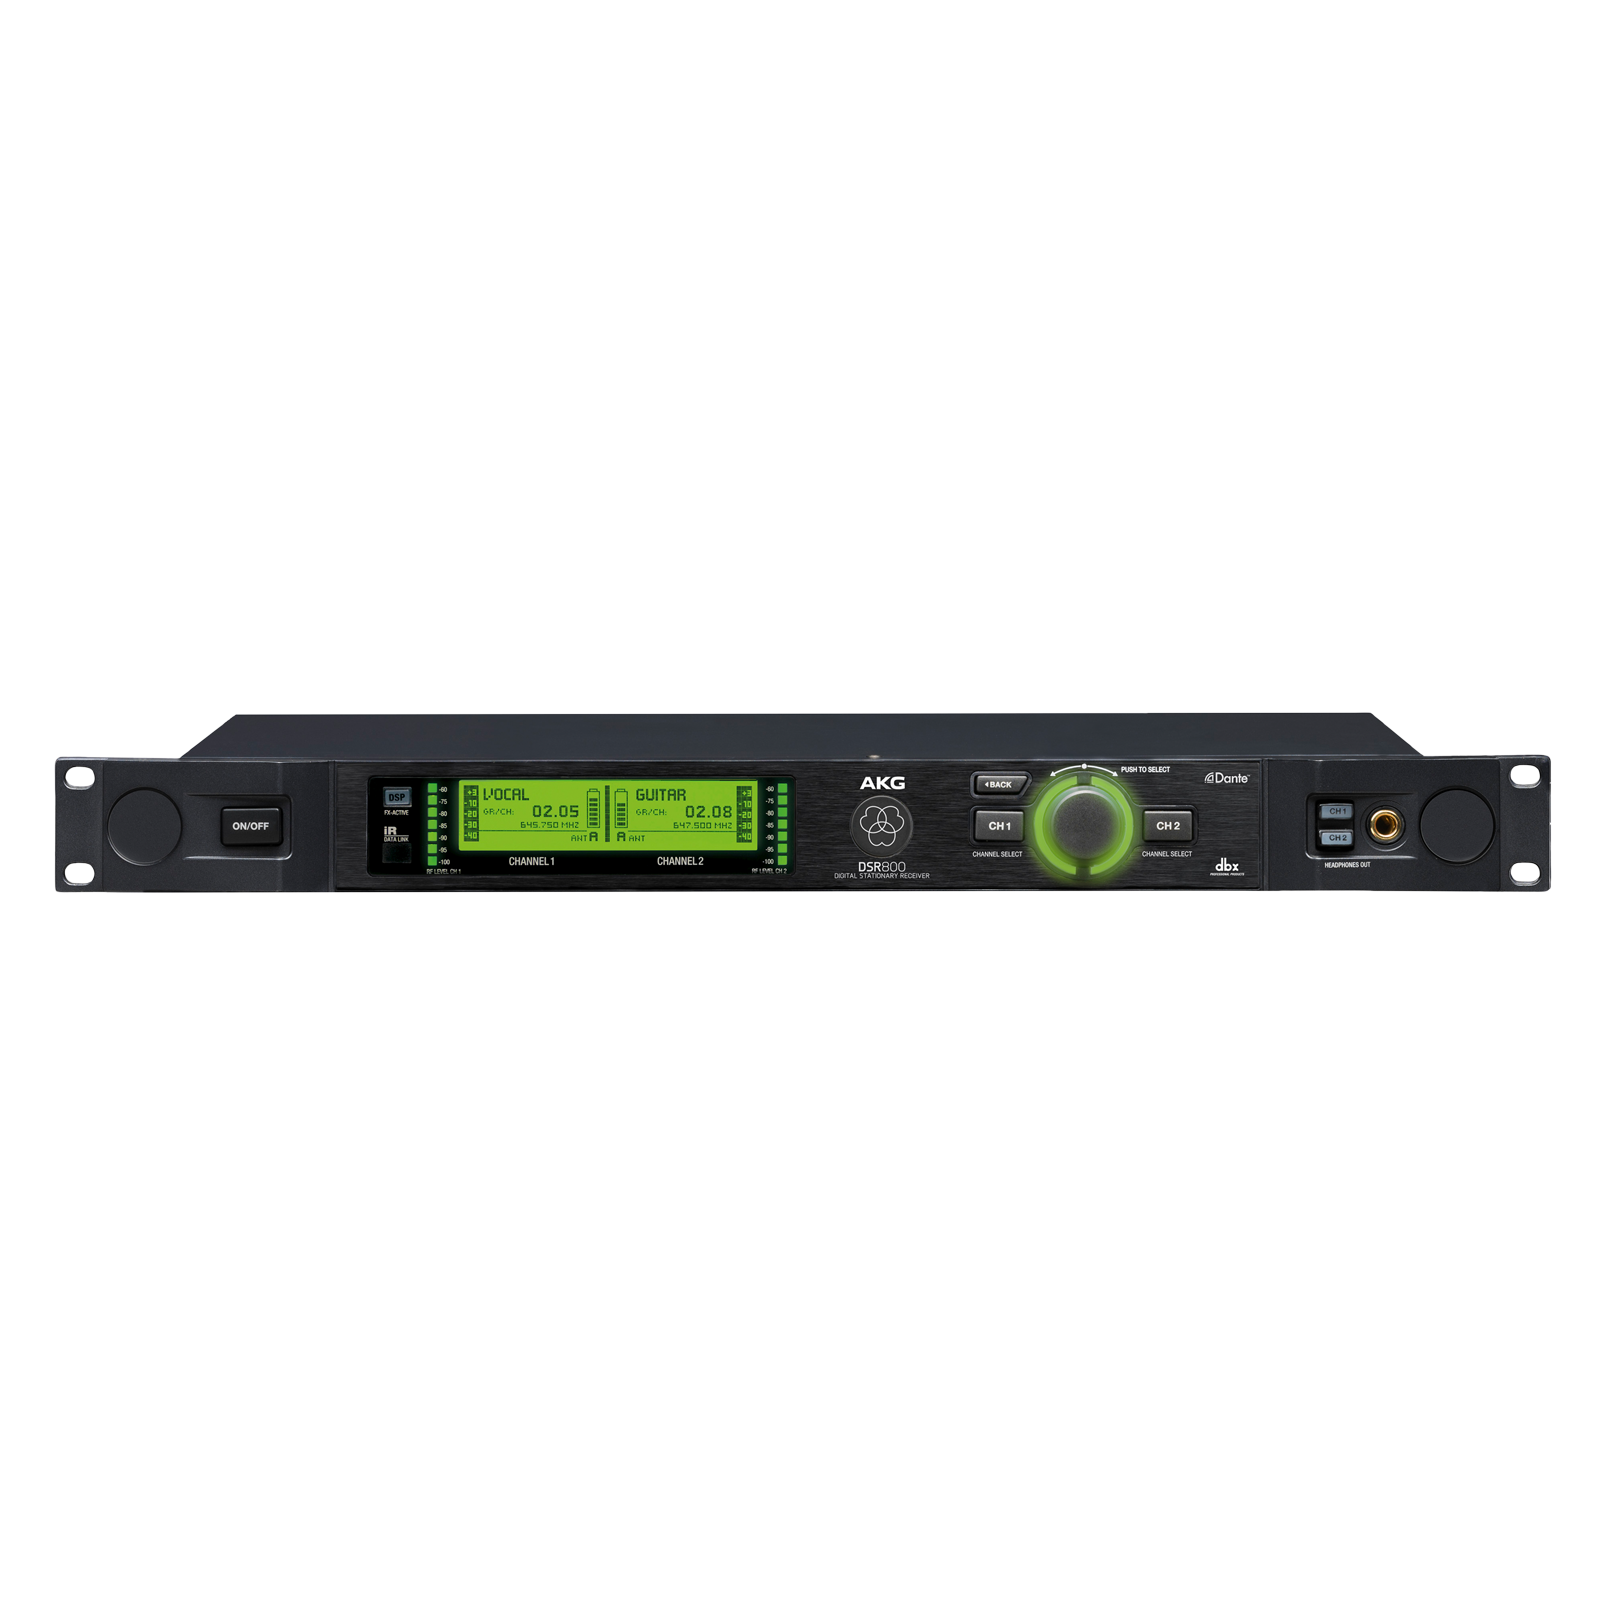 DSR800 Band1 - Black - Reference digital wireless stationary receiver - Detailshot 1